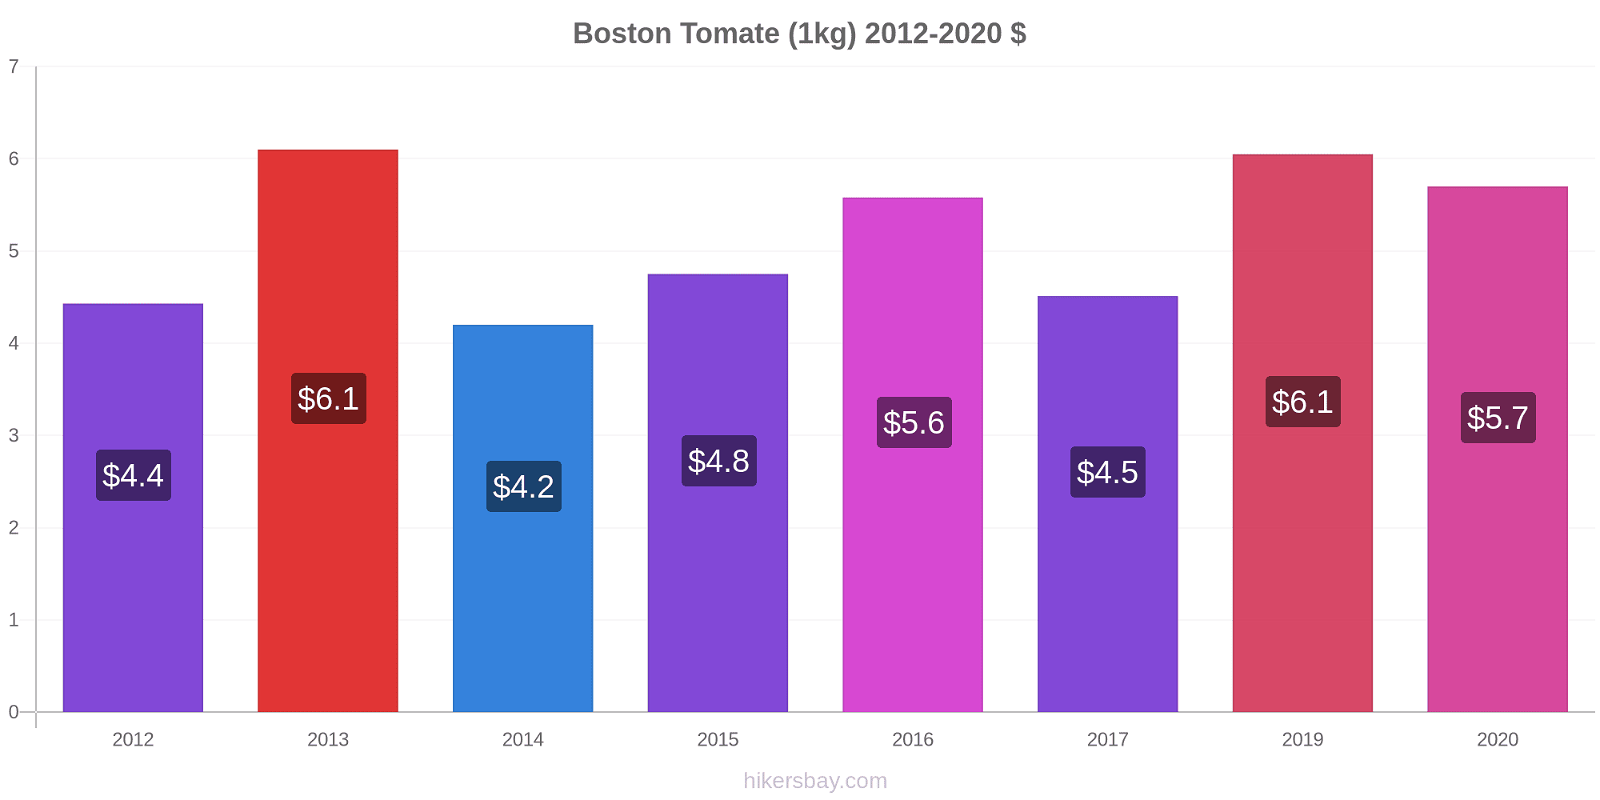 Boston Preisänderungen Tomaten (1kg) hikersbay.com